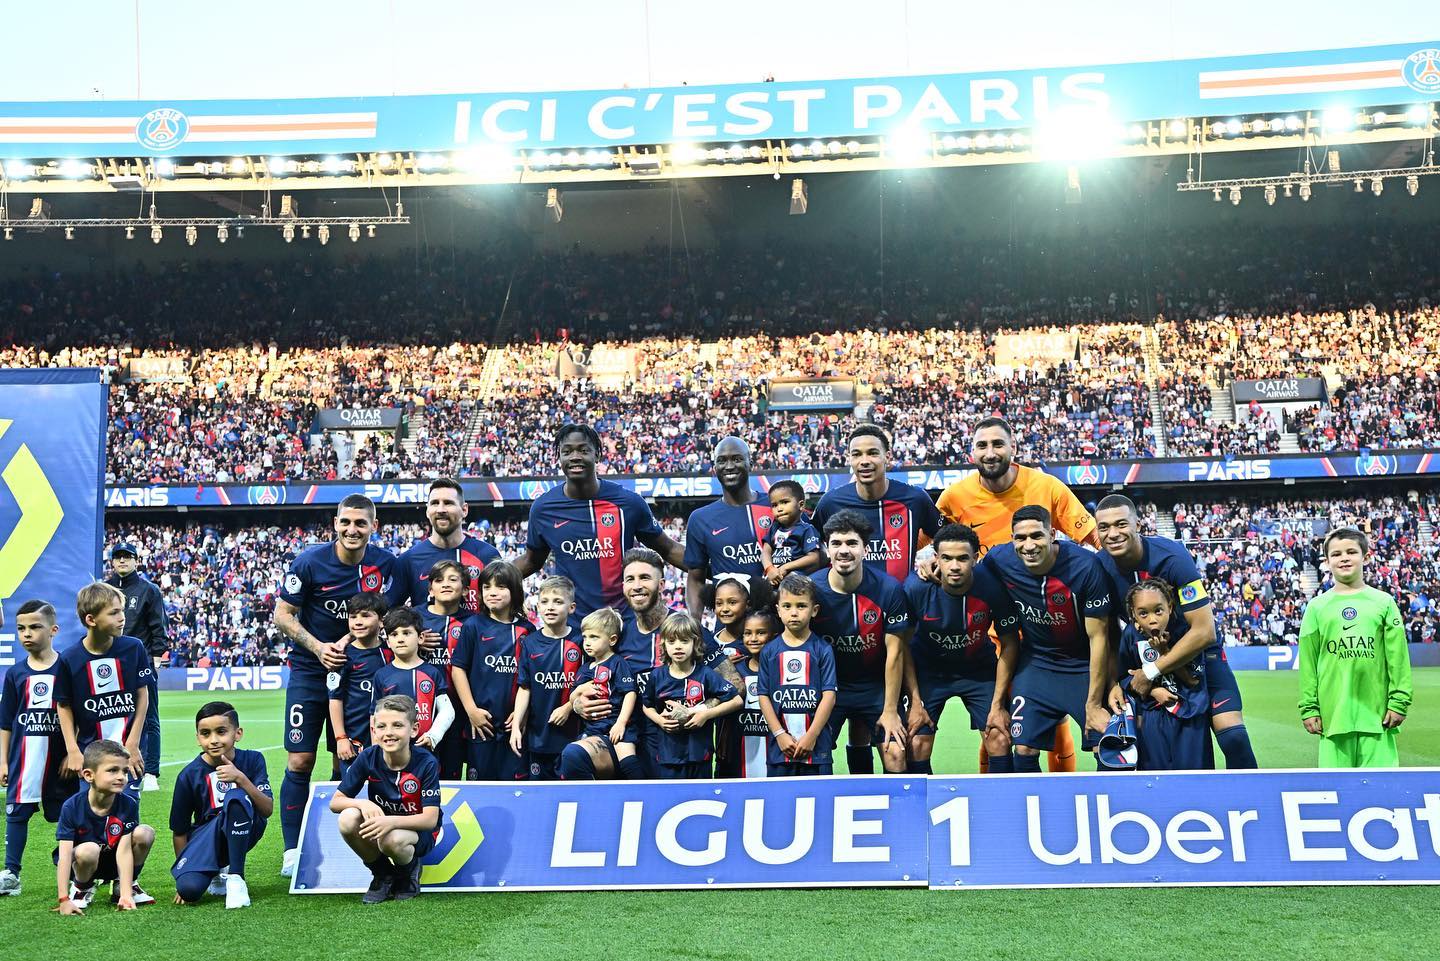 Futbollistët e ekipit fitues në kampionatin francez Ligue 1. Foto nga PSG - Paris Saint Germain (Facebook)